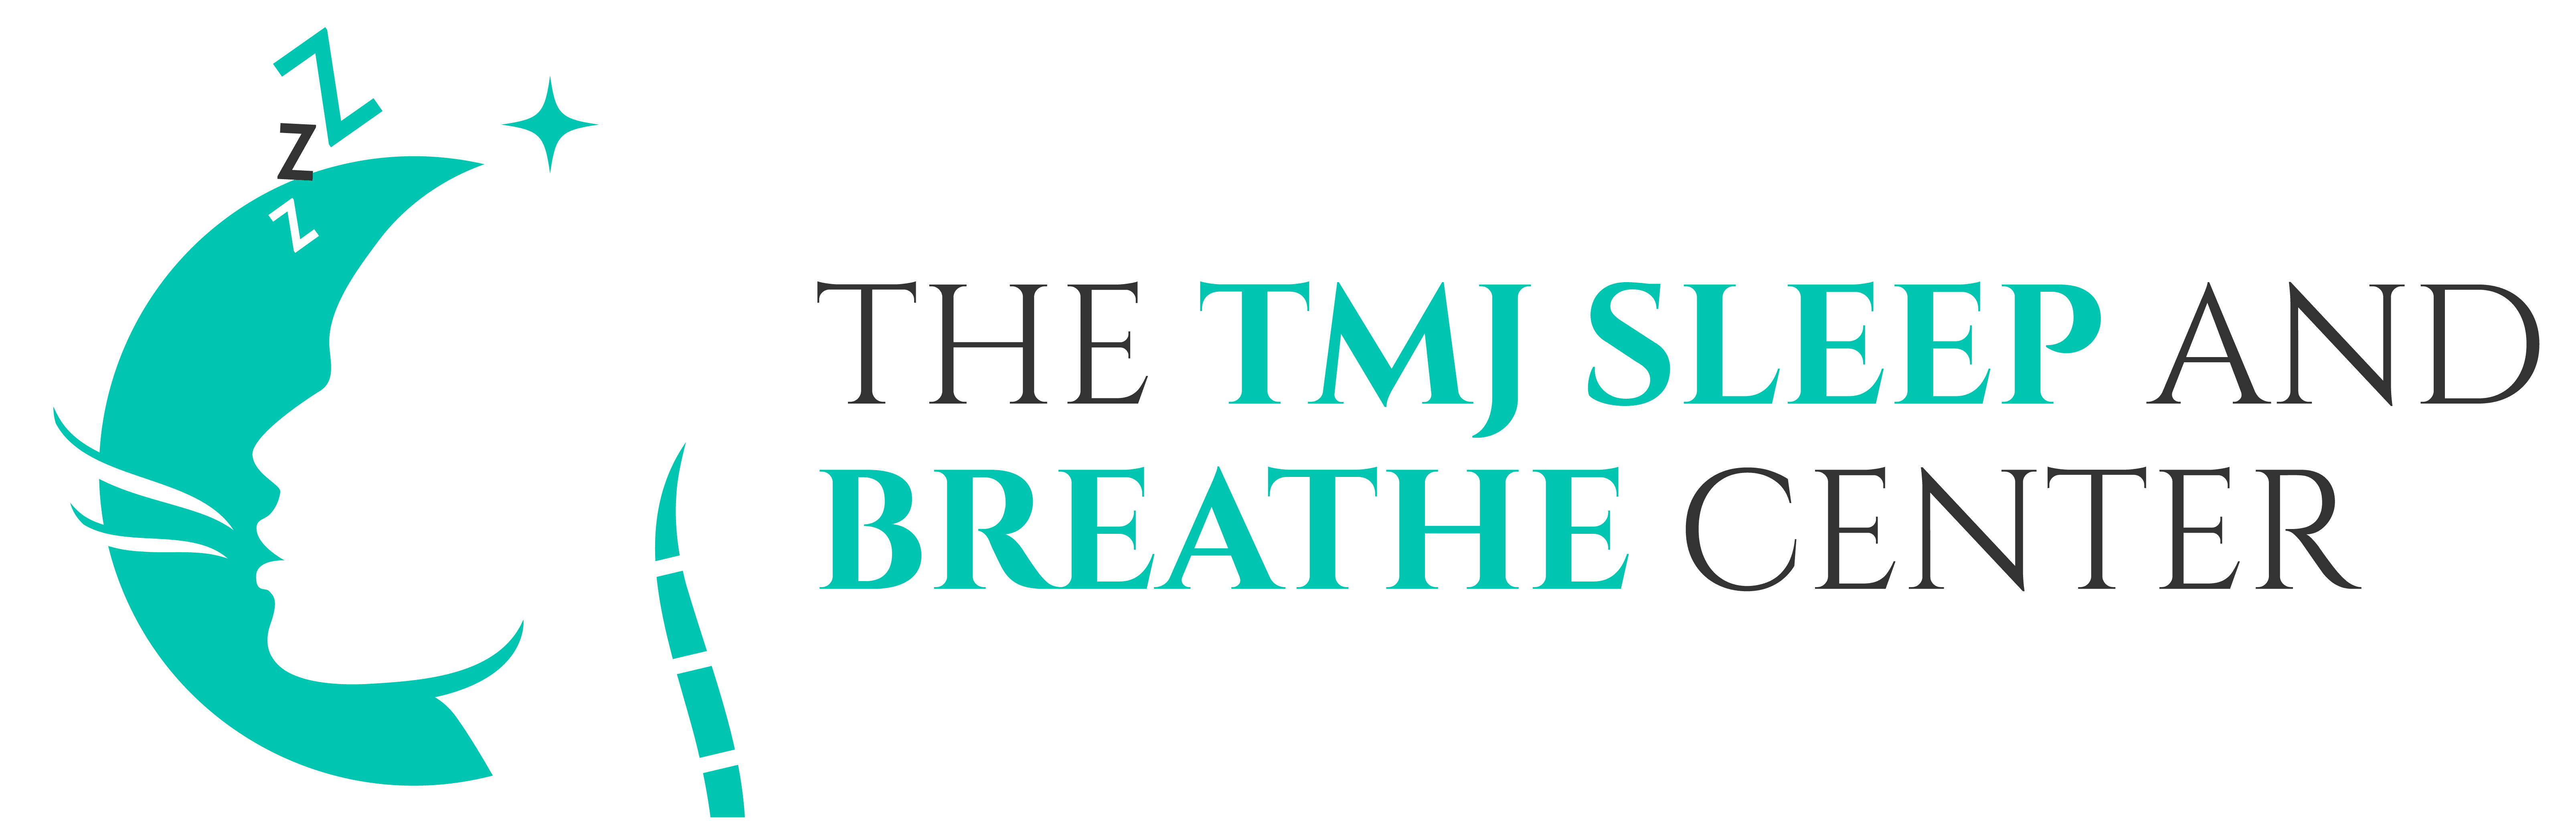 tmj sleep and breathe center